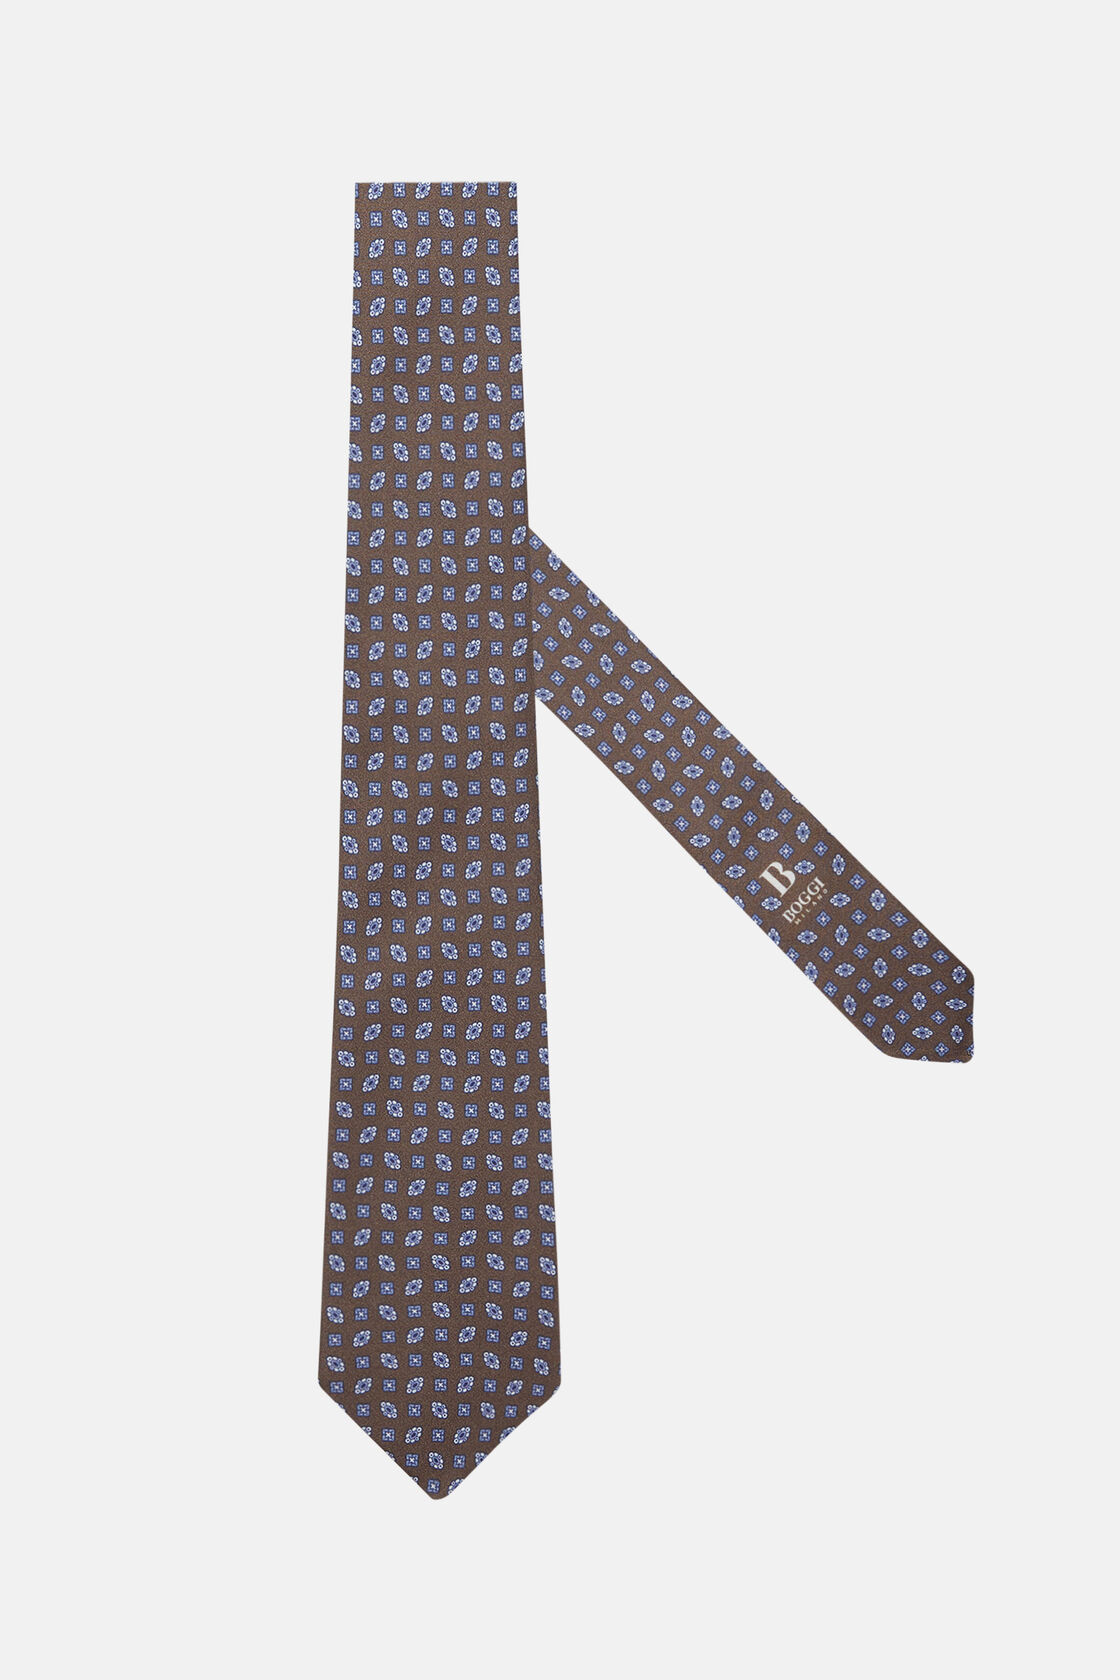 Cravate Motif Géométrique En Soie, Marron, hi-res